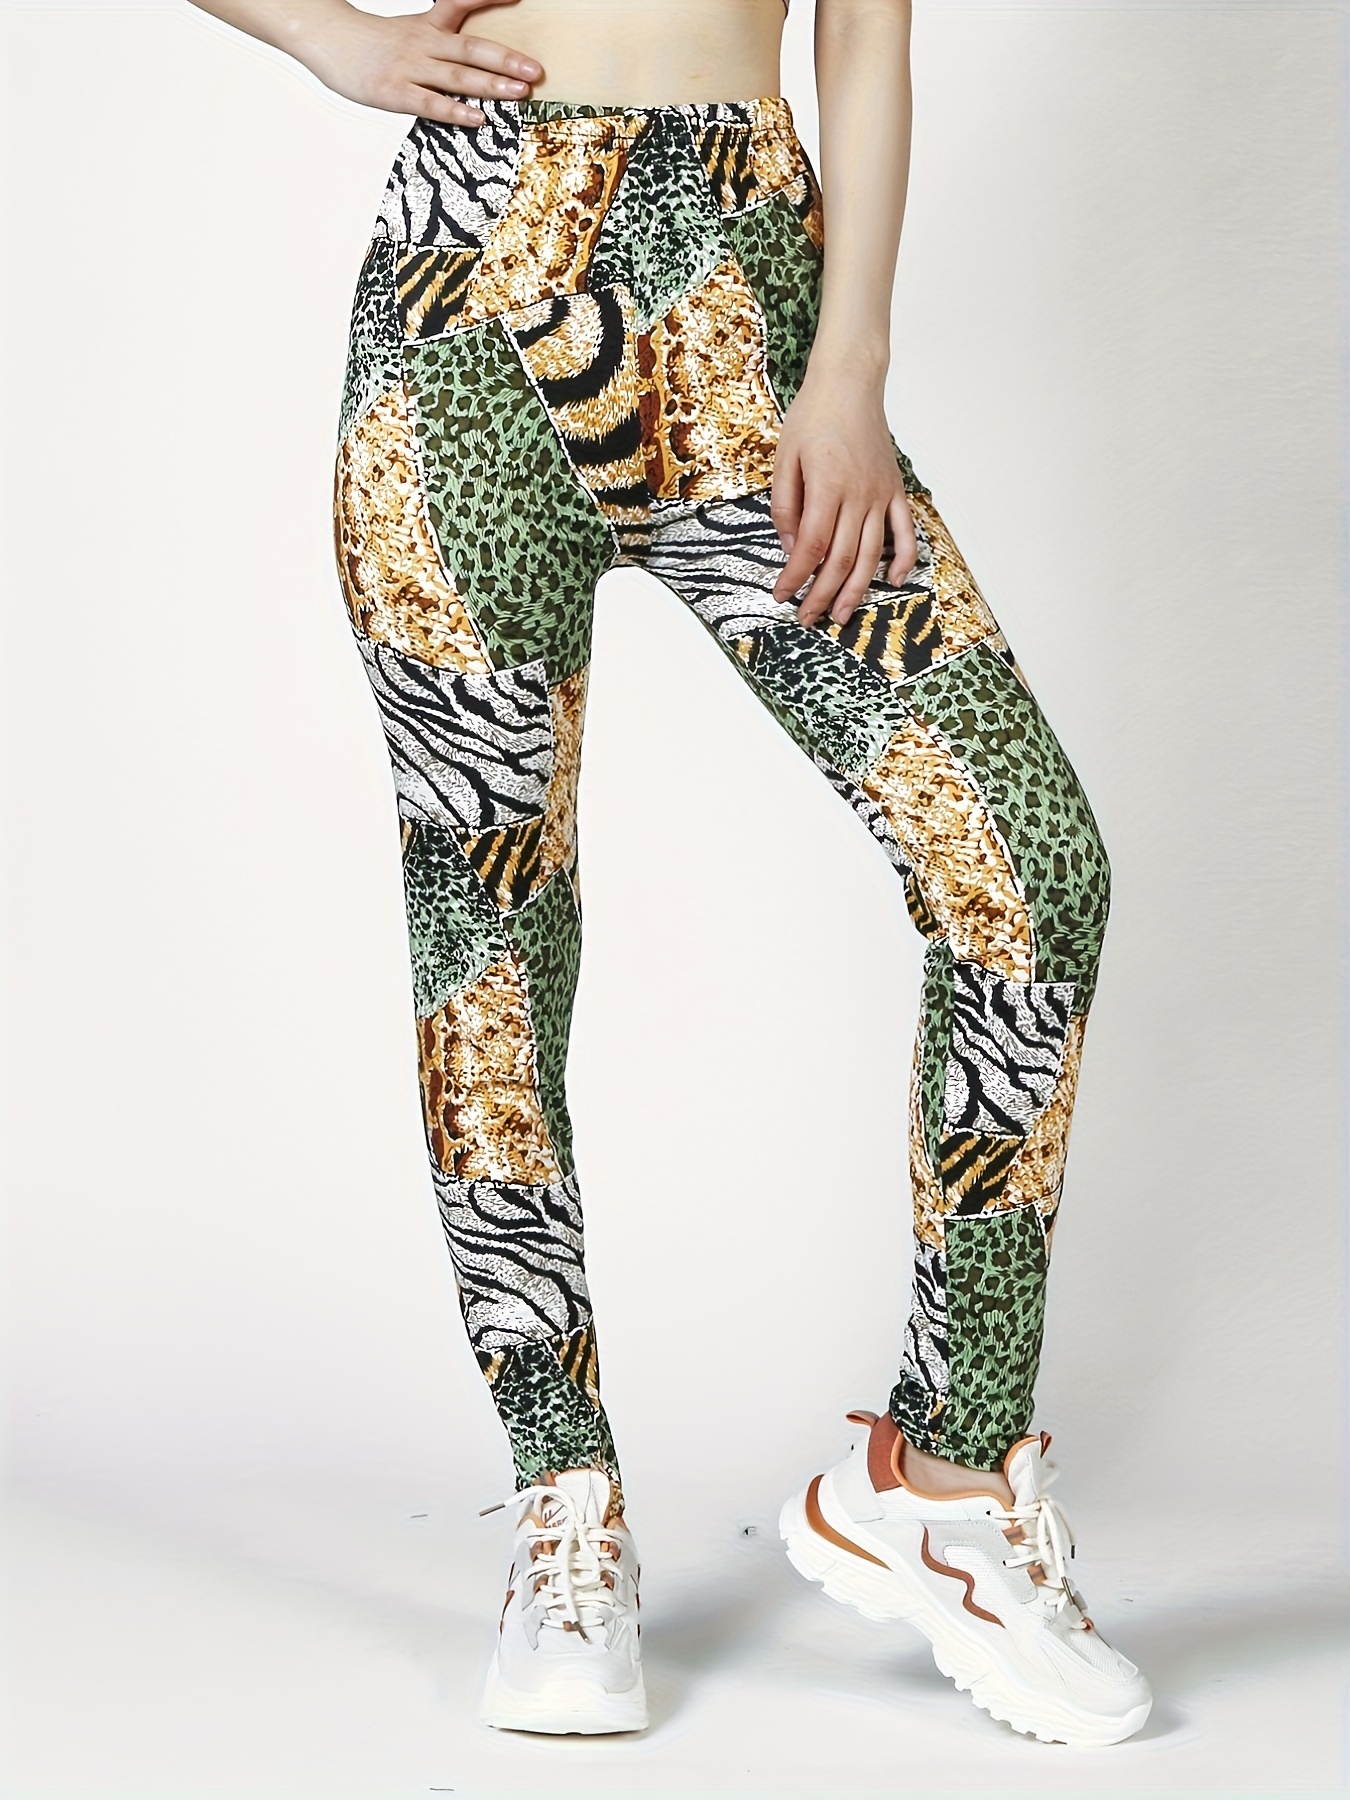 80's Neon Leopard Print Leggings – One Size – Masquerade Costume Hire